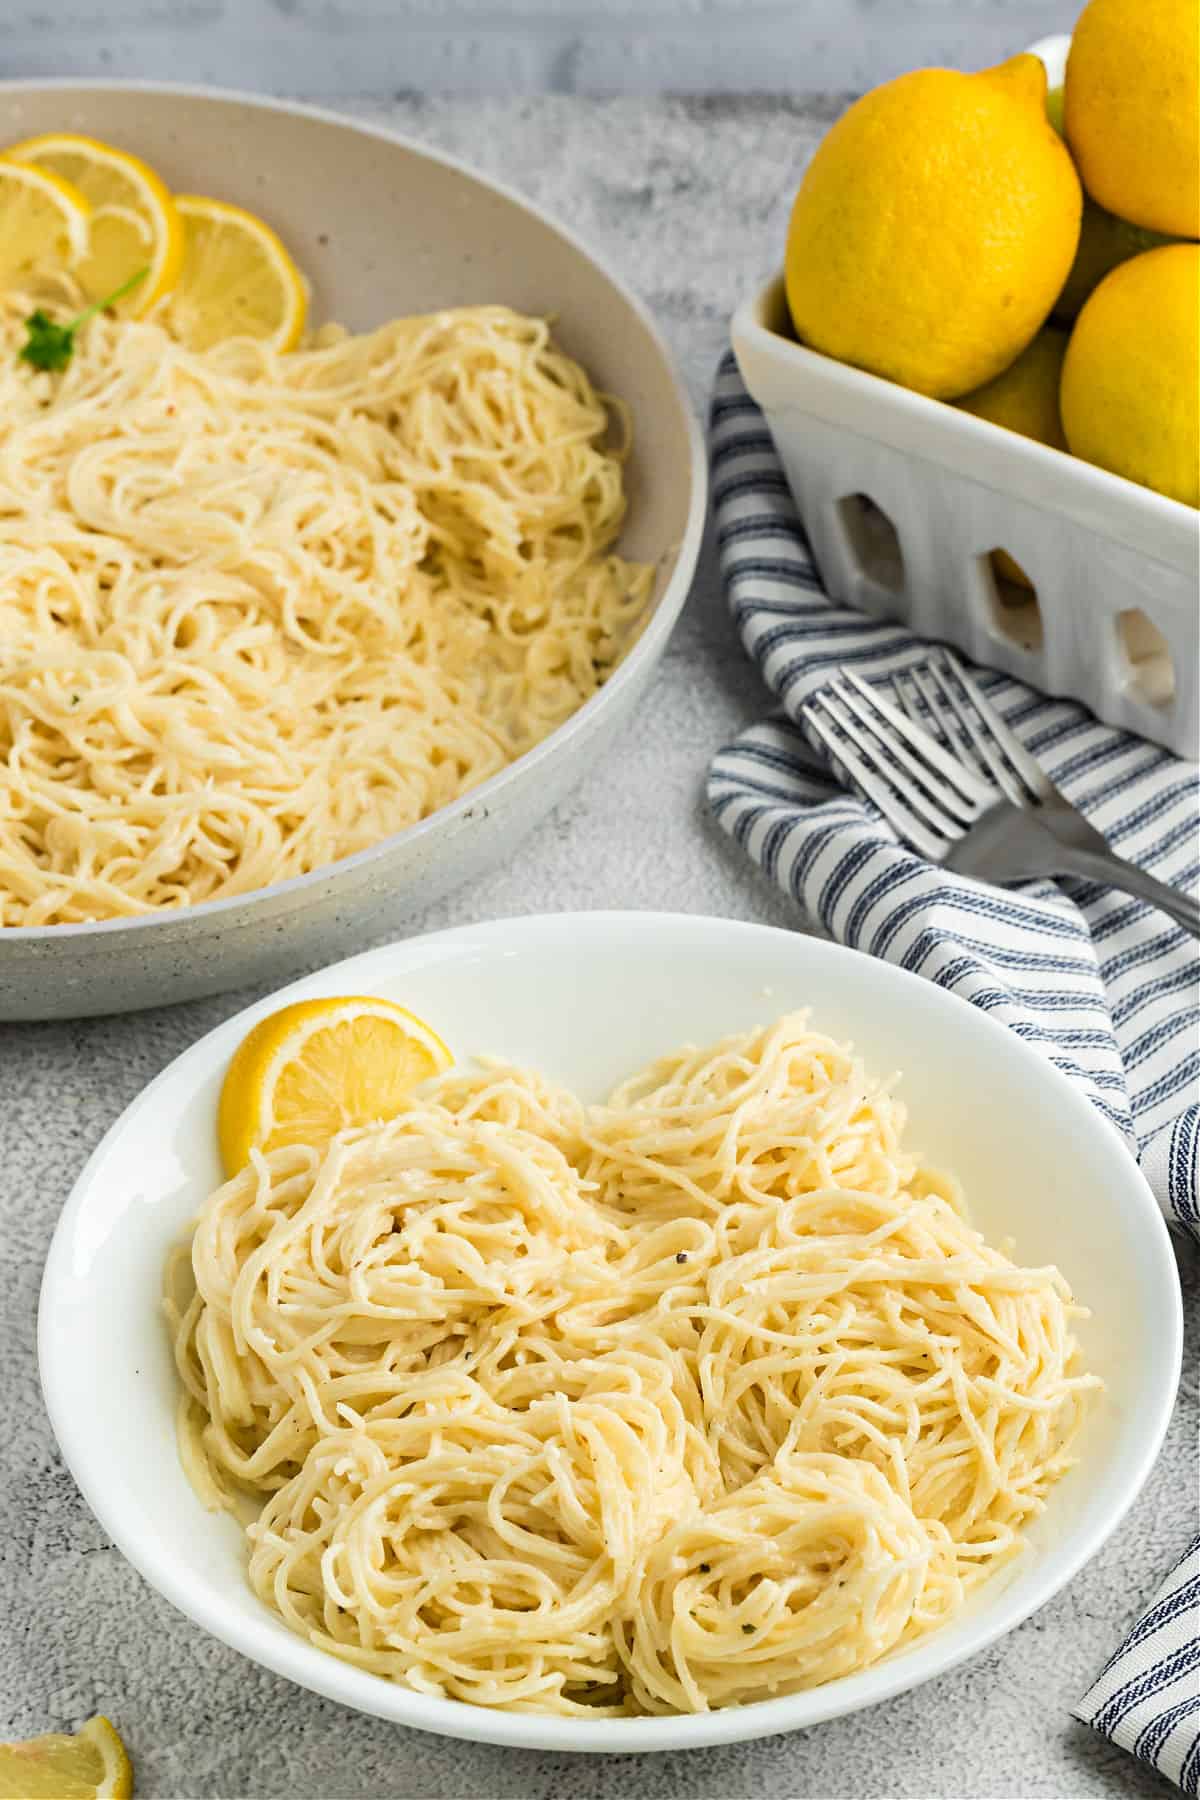 Lemon garlic pasta in a bowl.